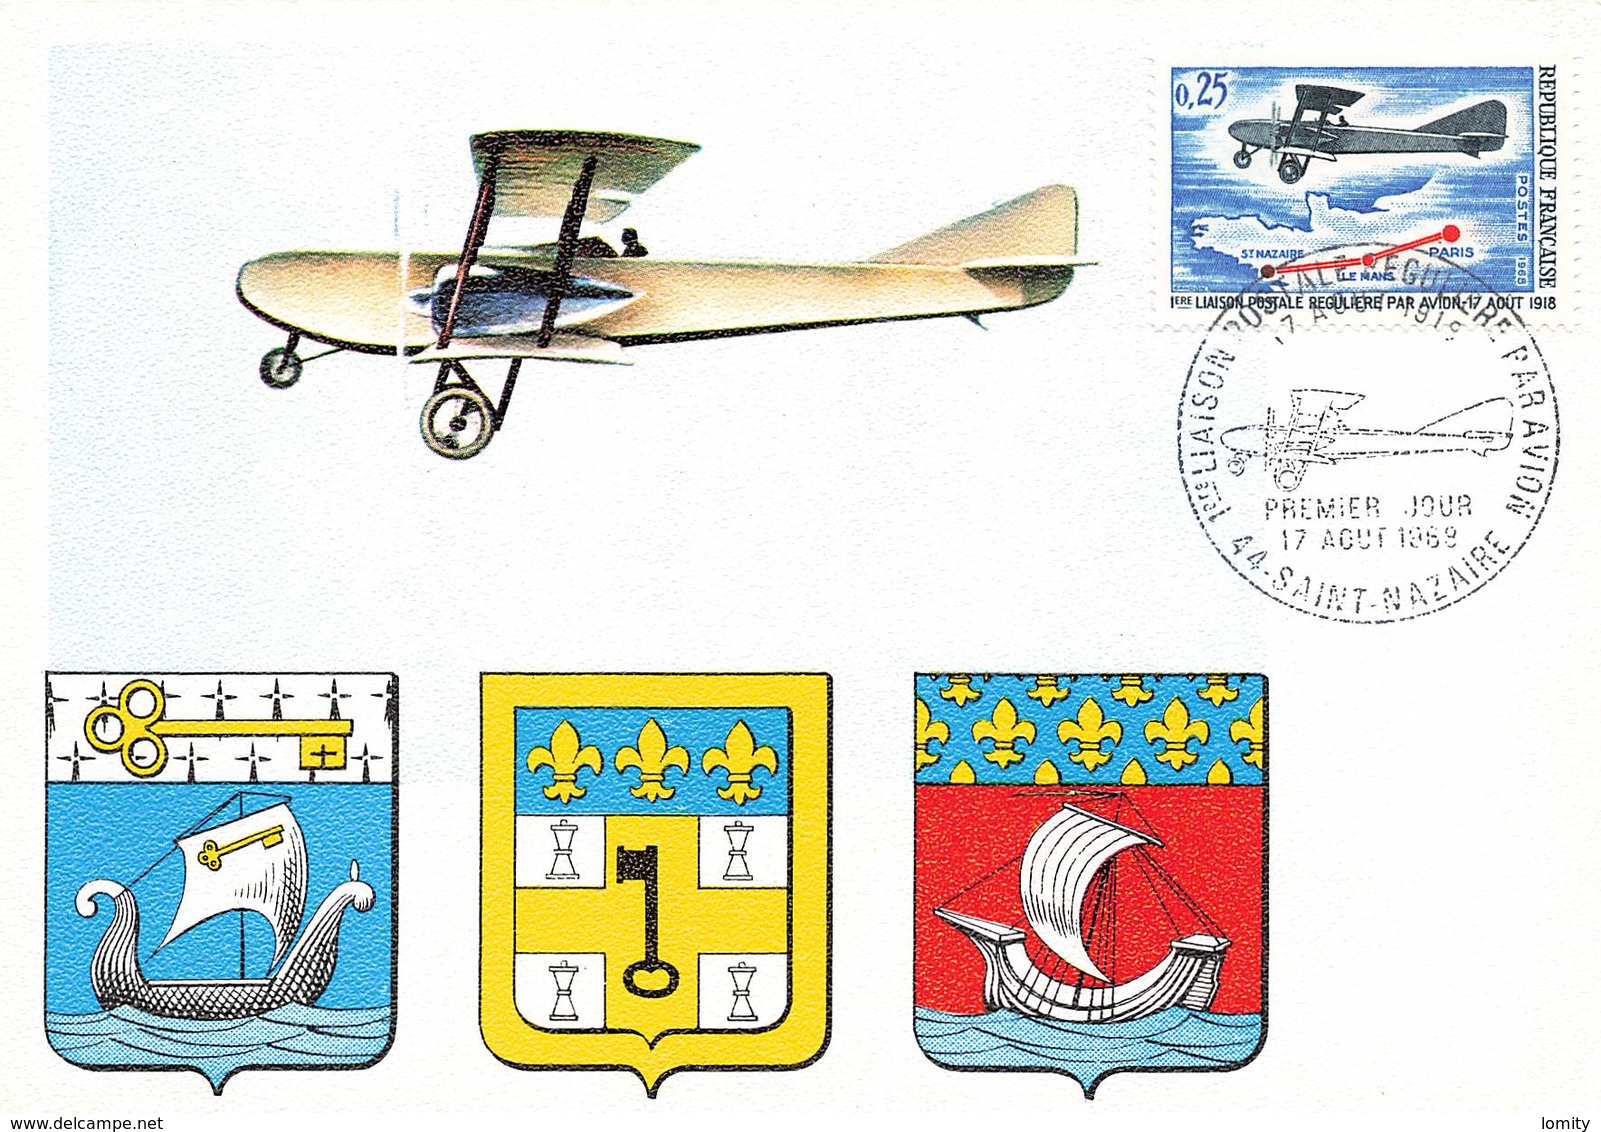 France lot de 40 cartes carte maximum card année 1968 sport aviation croix rouge ...